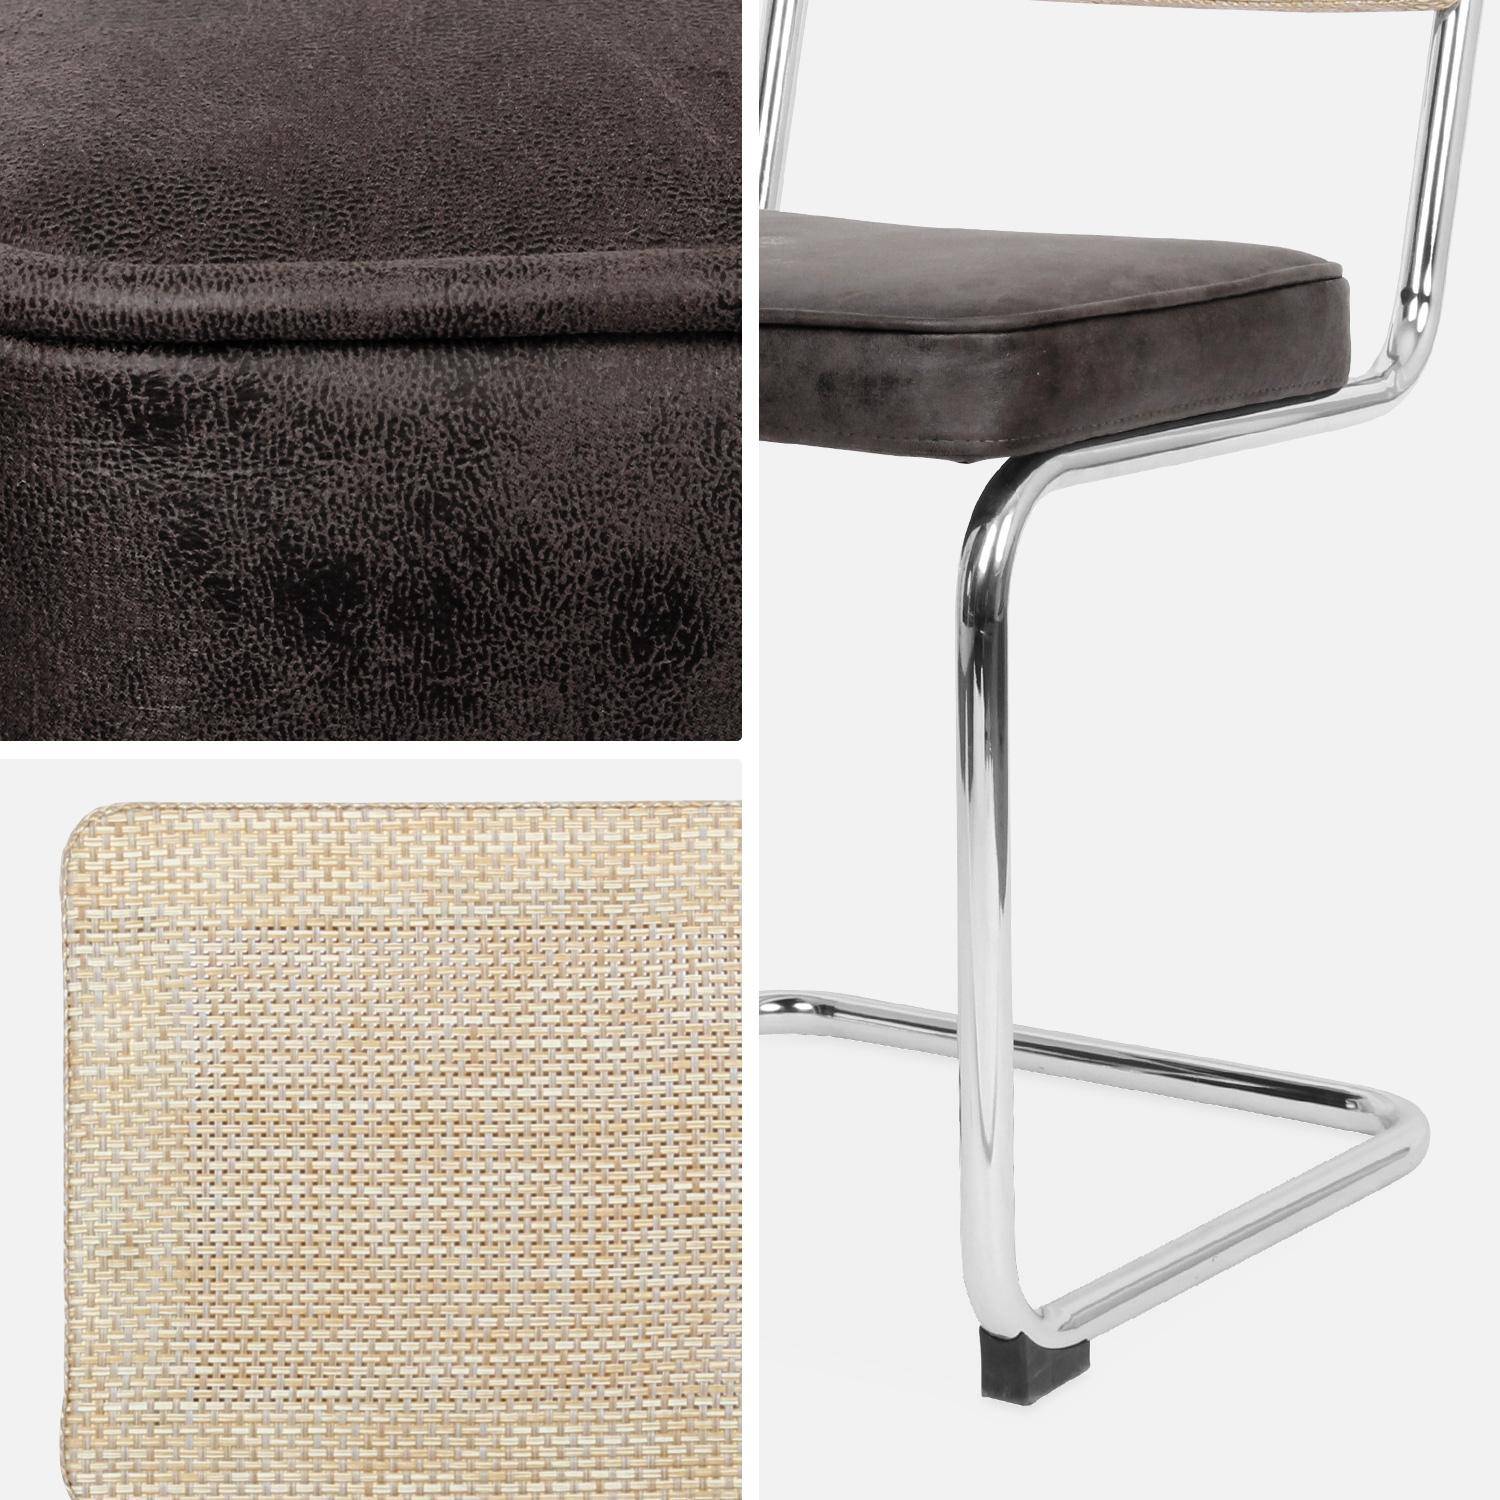 2 sillas cantilever - Maja - tela marrón oscuro y resina efecto ratán, 46 x 54,5 x 84,5cm   Photo8